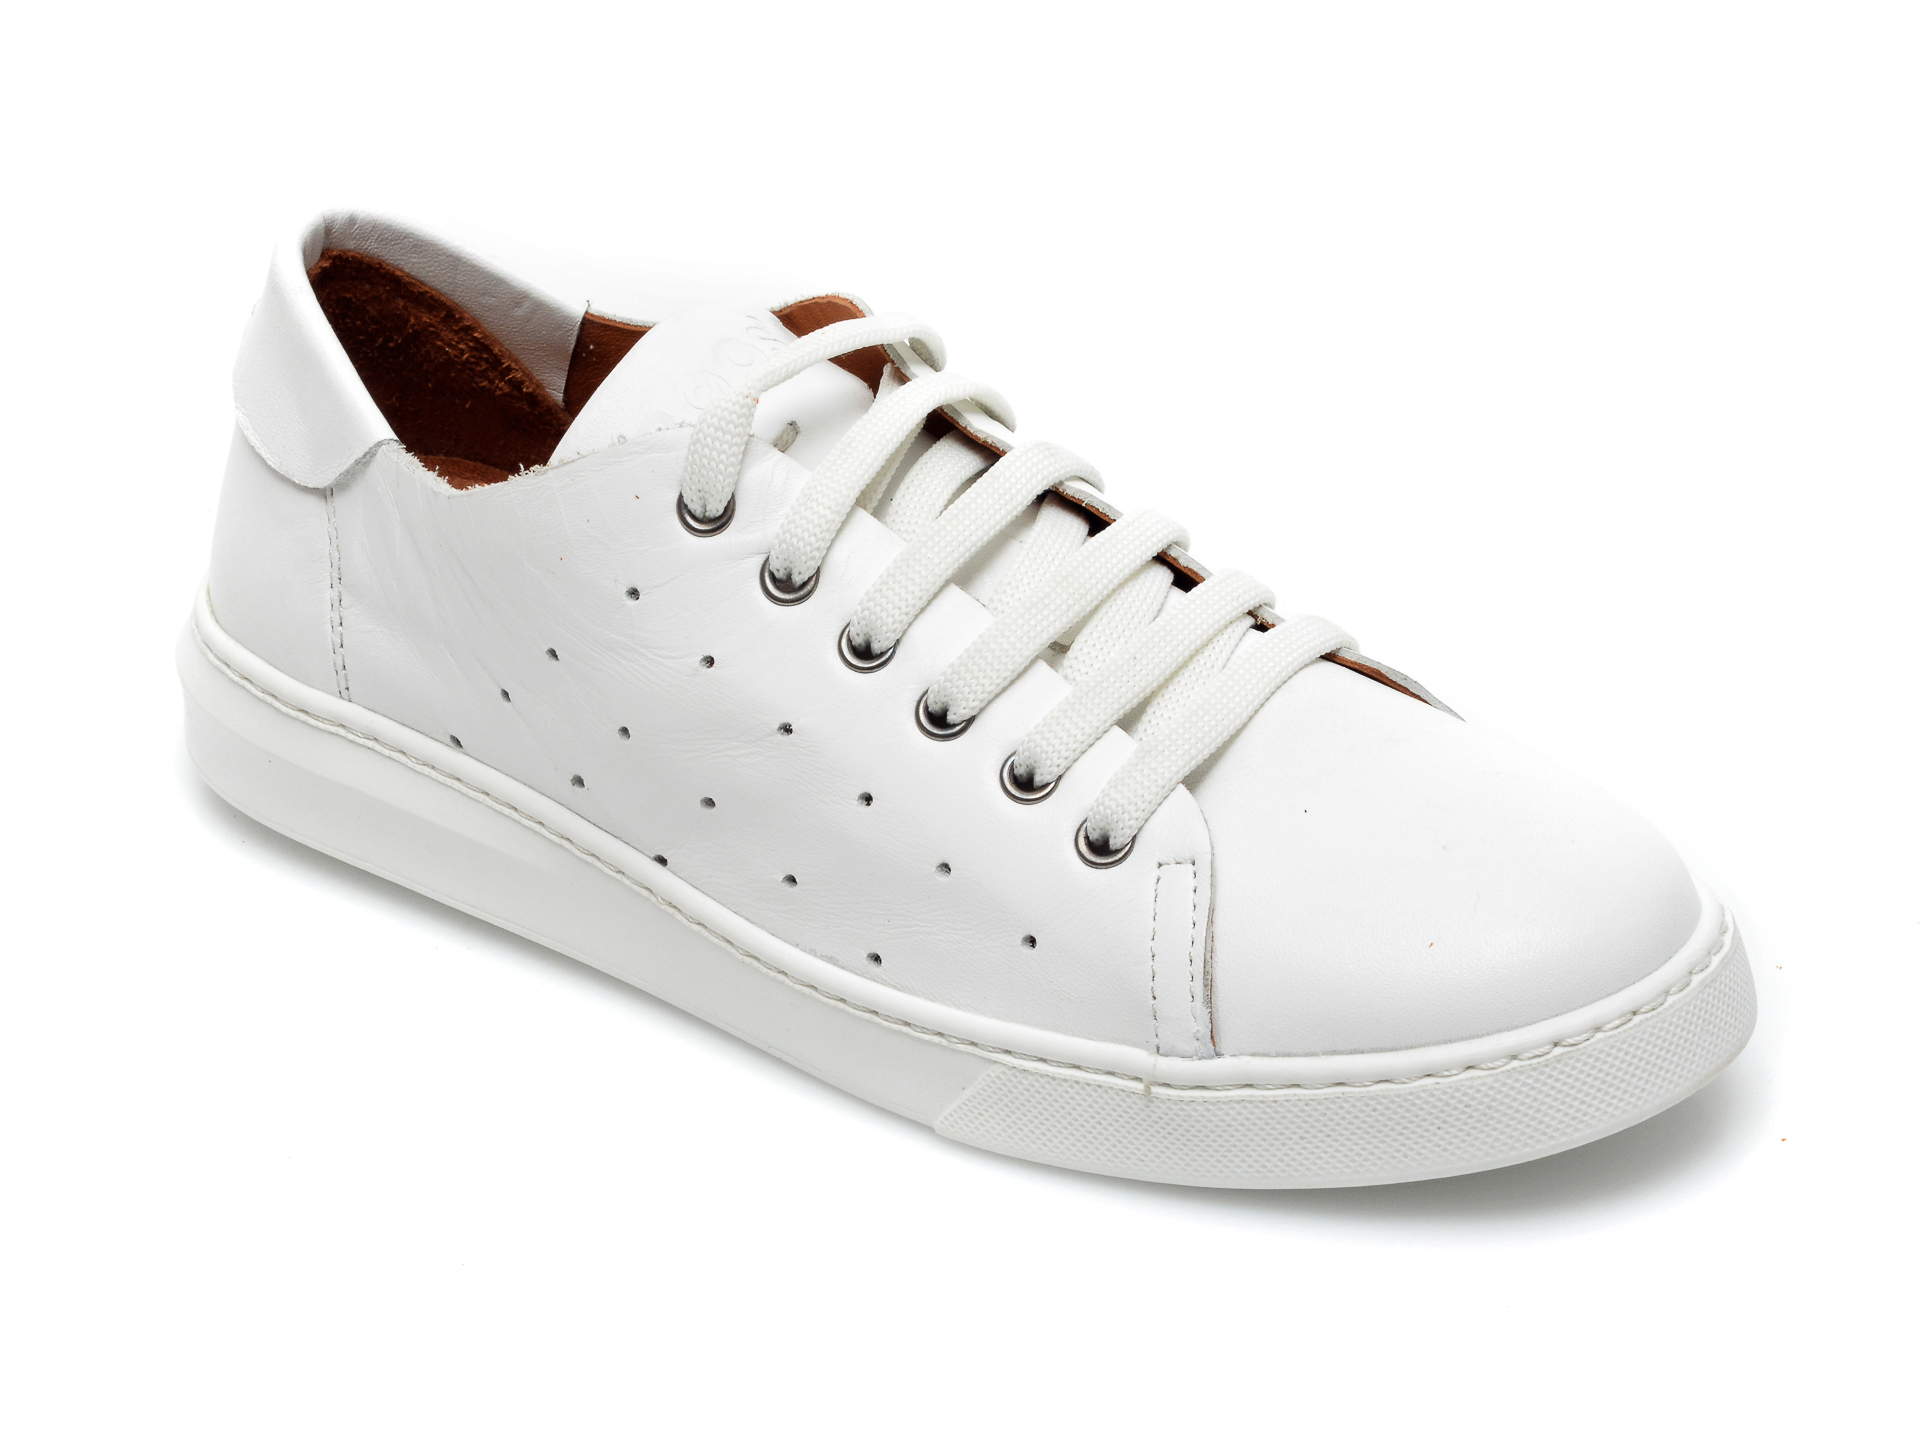 Pantofi BABOOS albi, 2301, din piele naturala